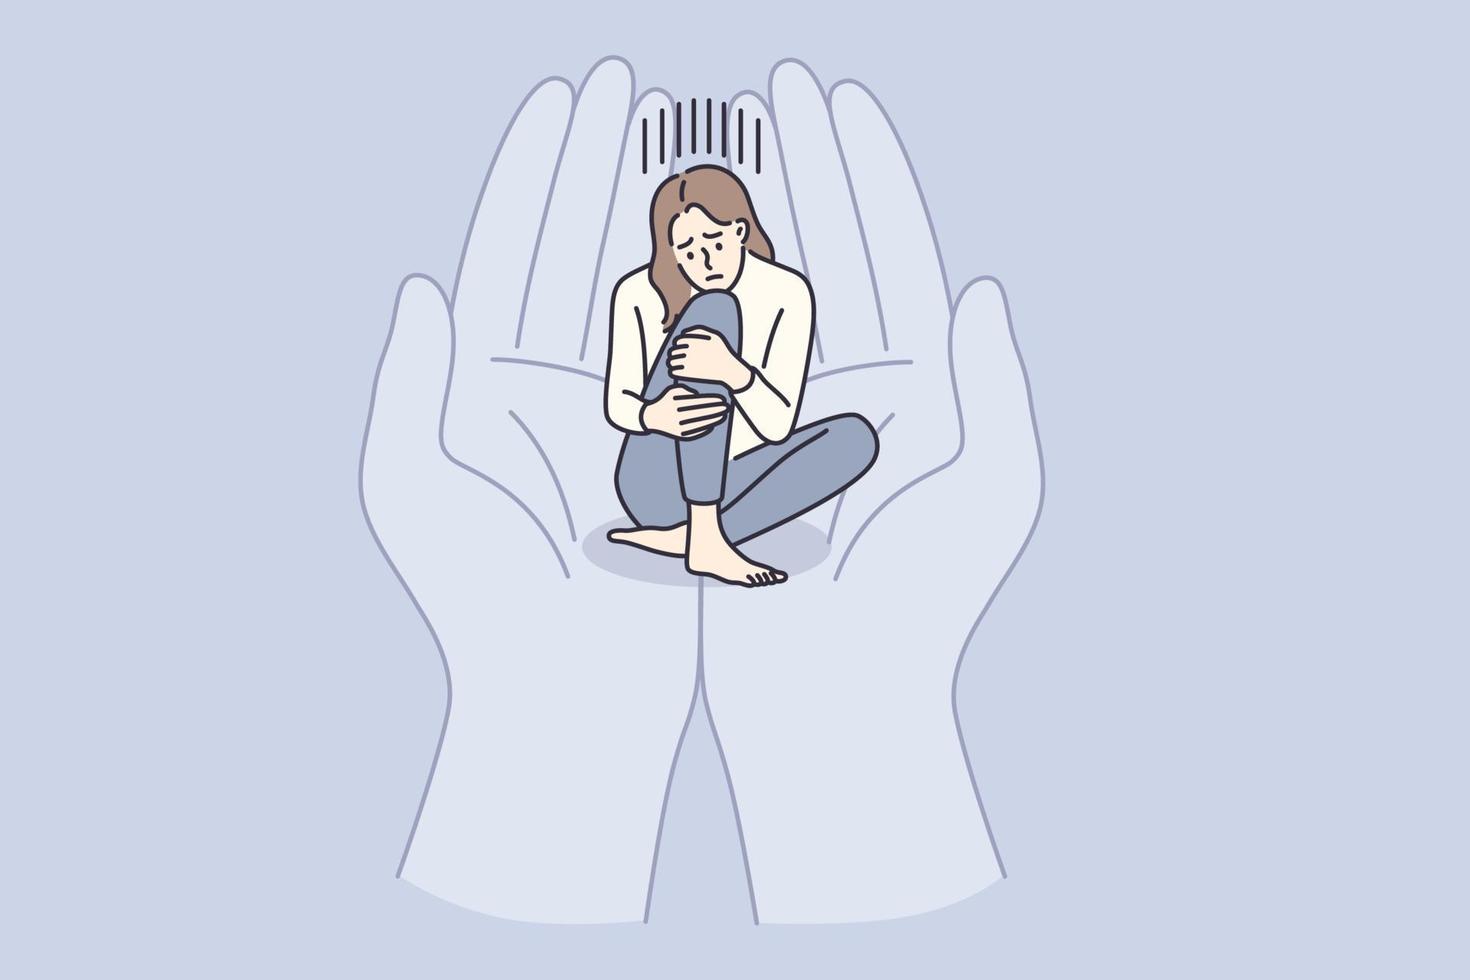 concept de dépression, de deuil et de soutien. personnage de dessin animé de jeune fille déprimée triste assis dans des mains humaines paumes embrassant tenant son illustration vectorielle vecteur